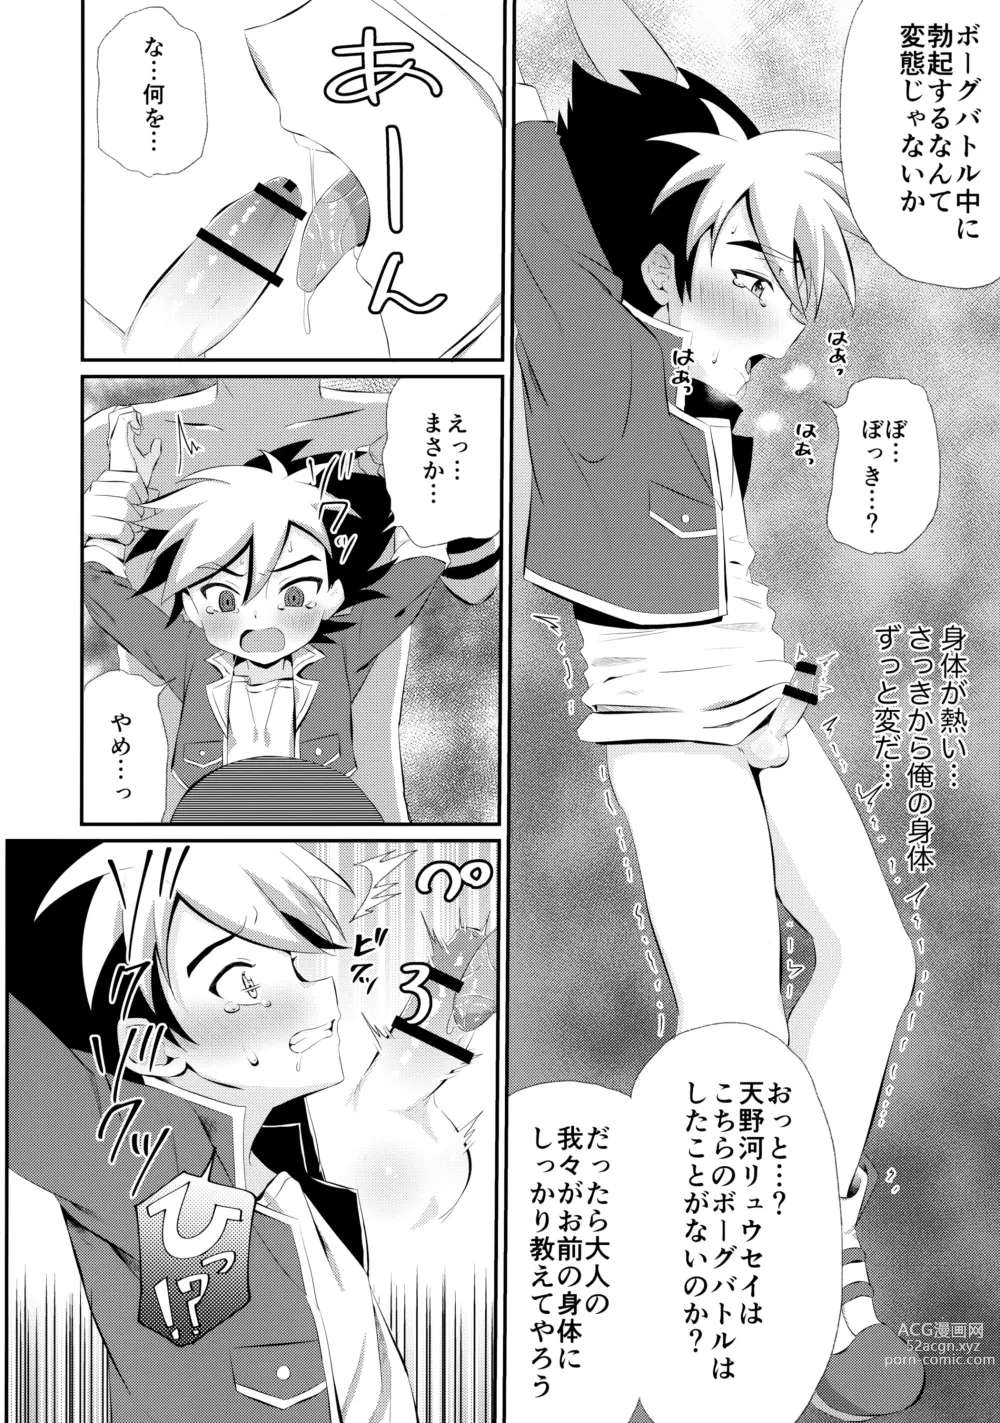 Page 13 of doujinshi Ryuuseisan ga Hikyouna Otona Bougubatora Nanka ni Makeru wake ga Nai!